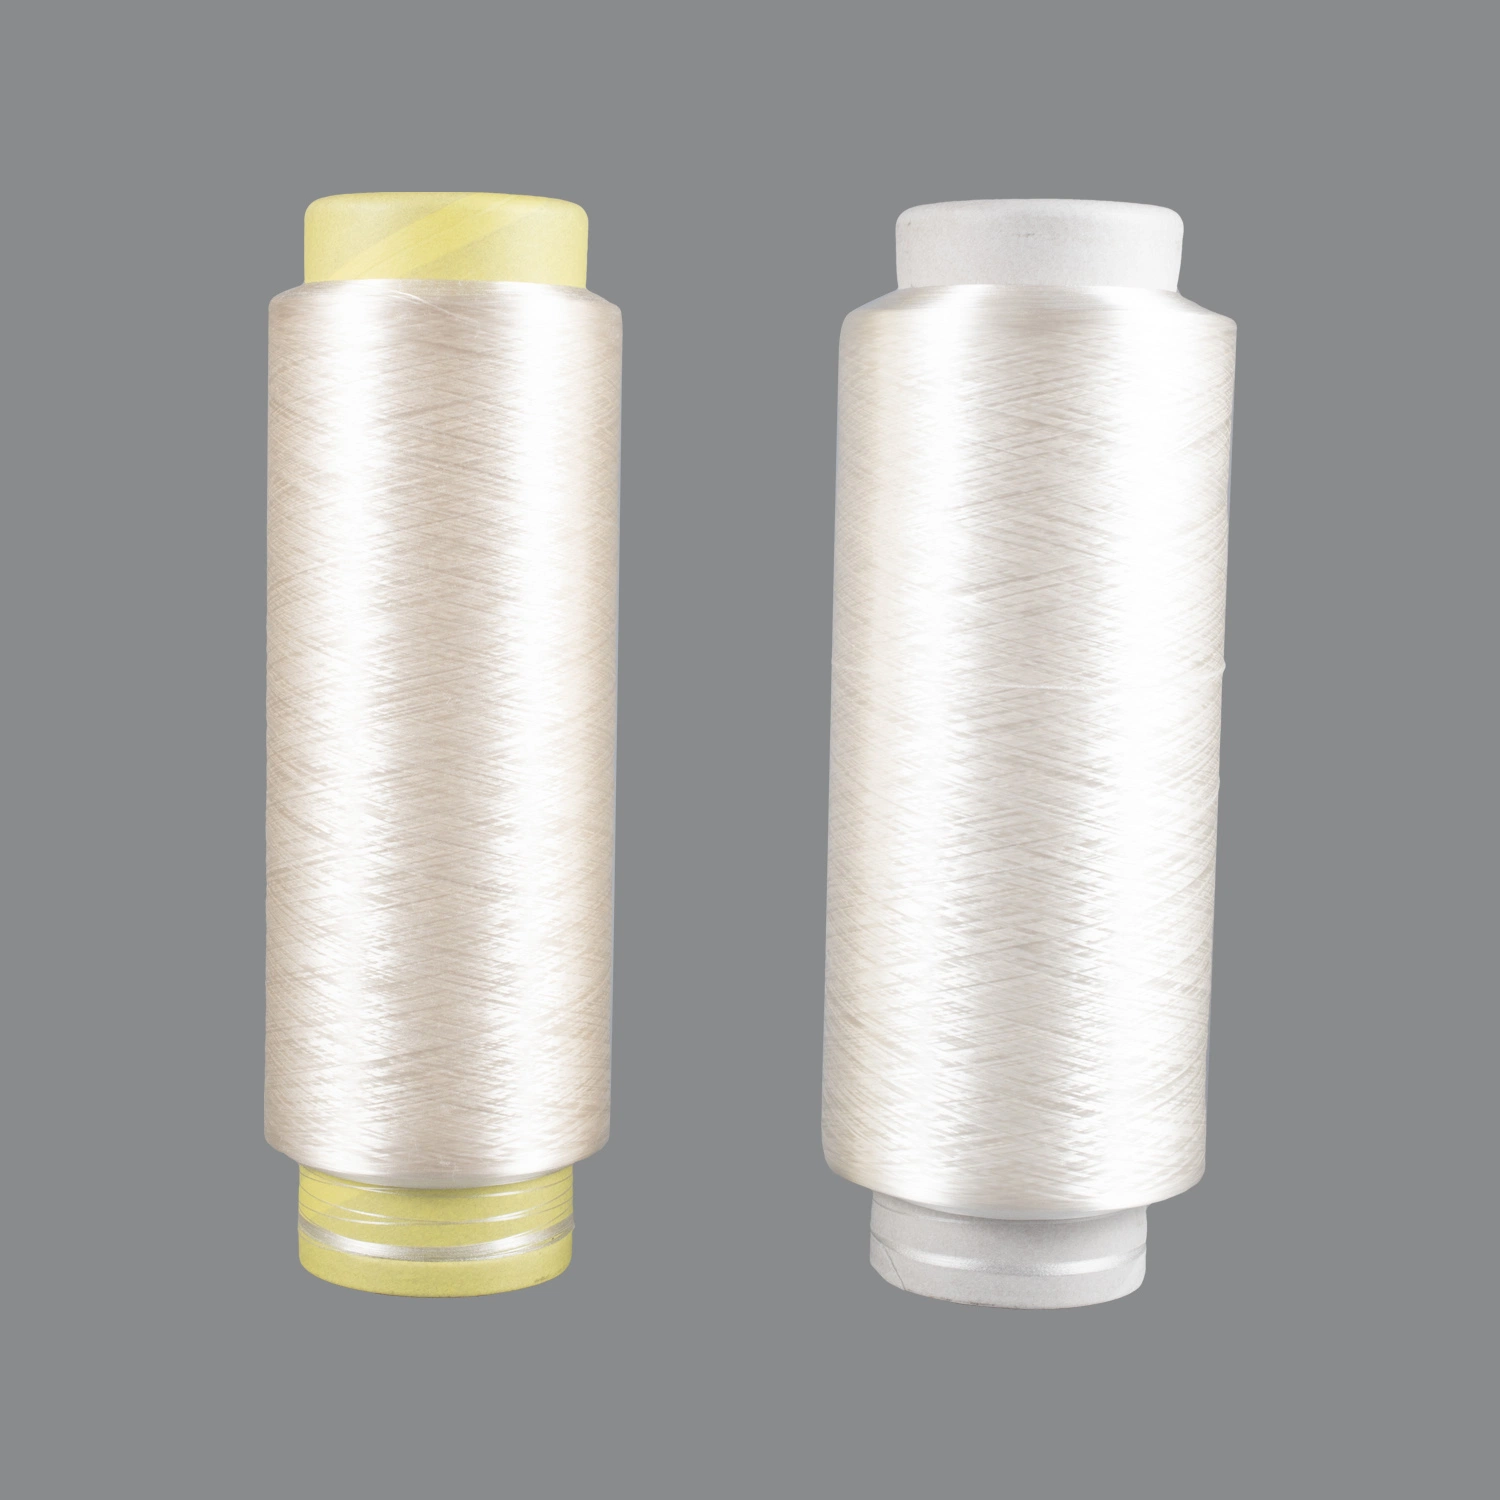 Переработанных Grs полиэфирных нитей DTY 200d/288f SD нити накаливания оптовая торговля Китая производителя для вязания плетение Warp